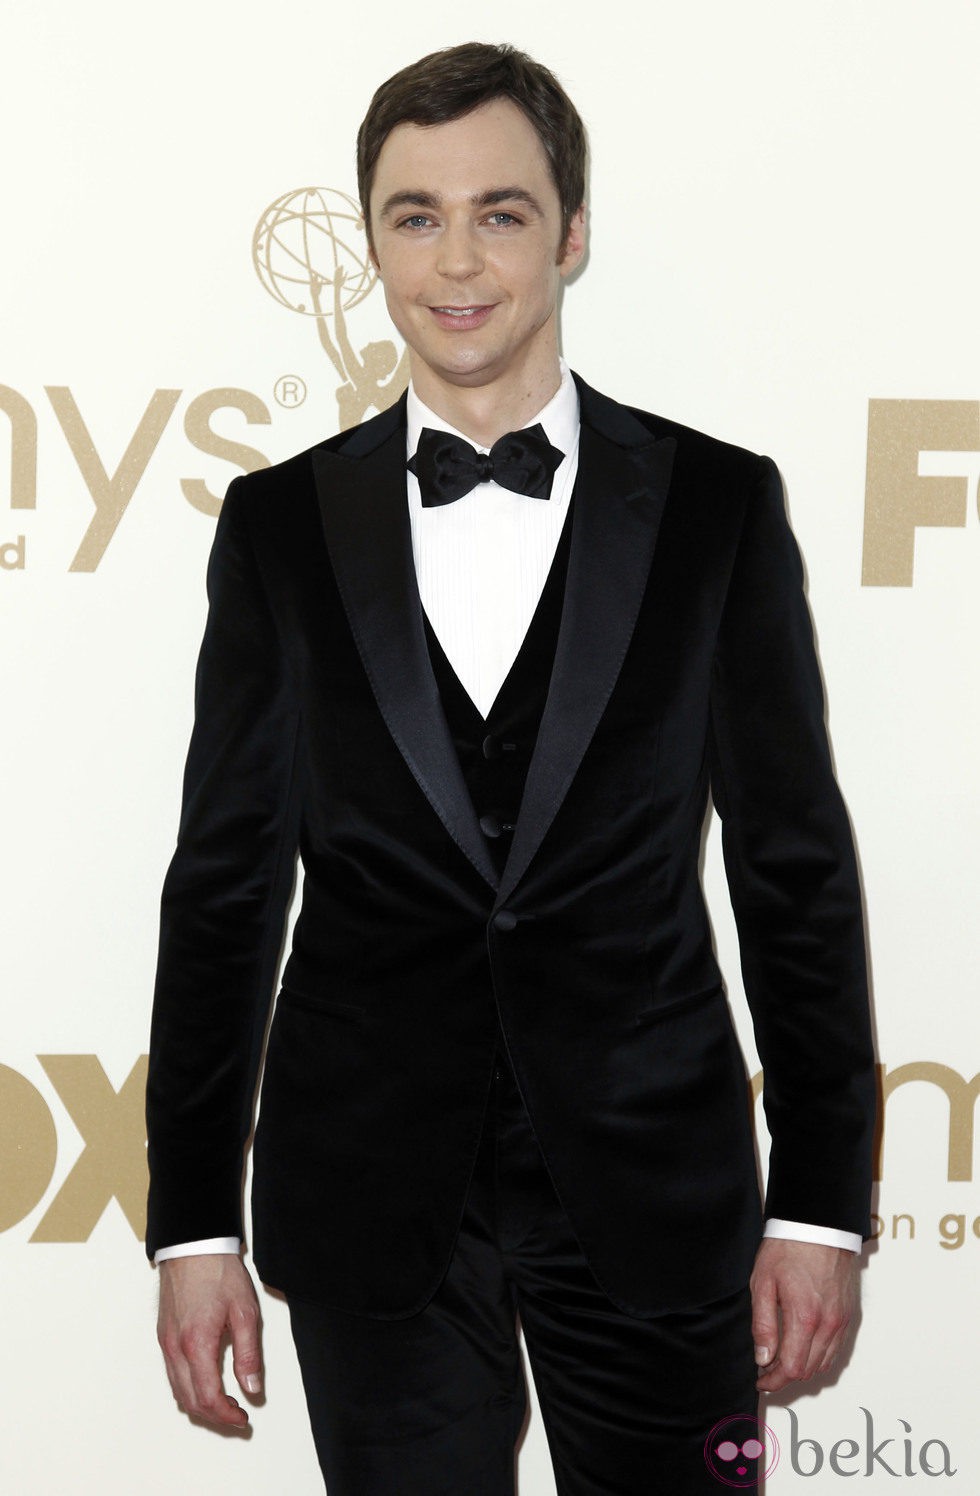 Jim Parsons en los premios Emmy 2011